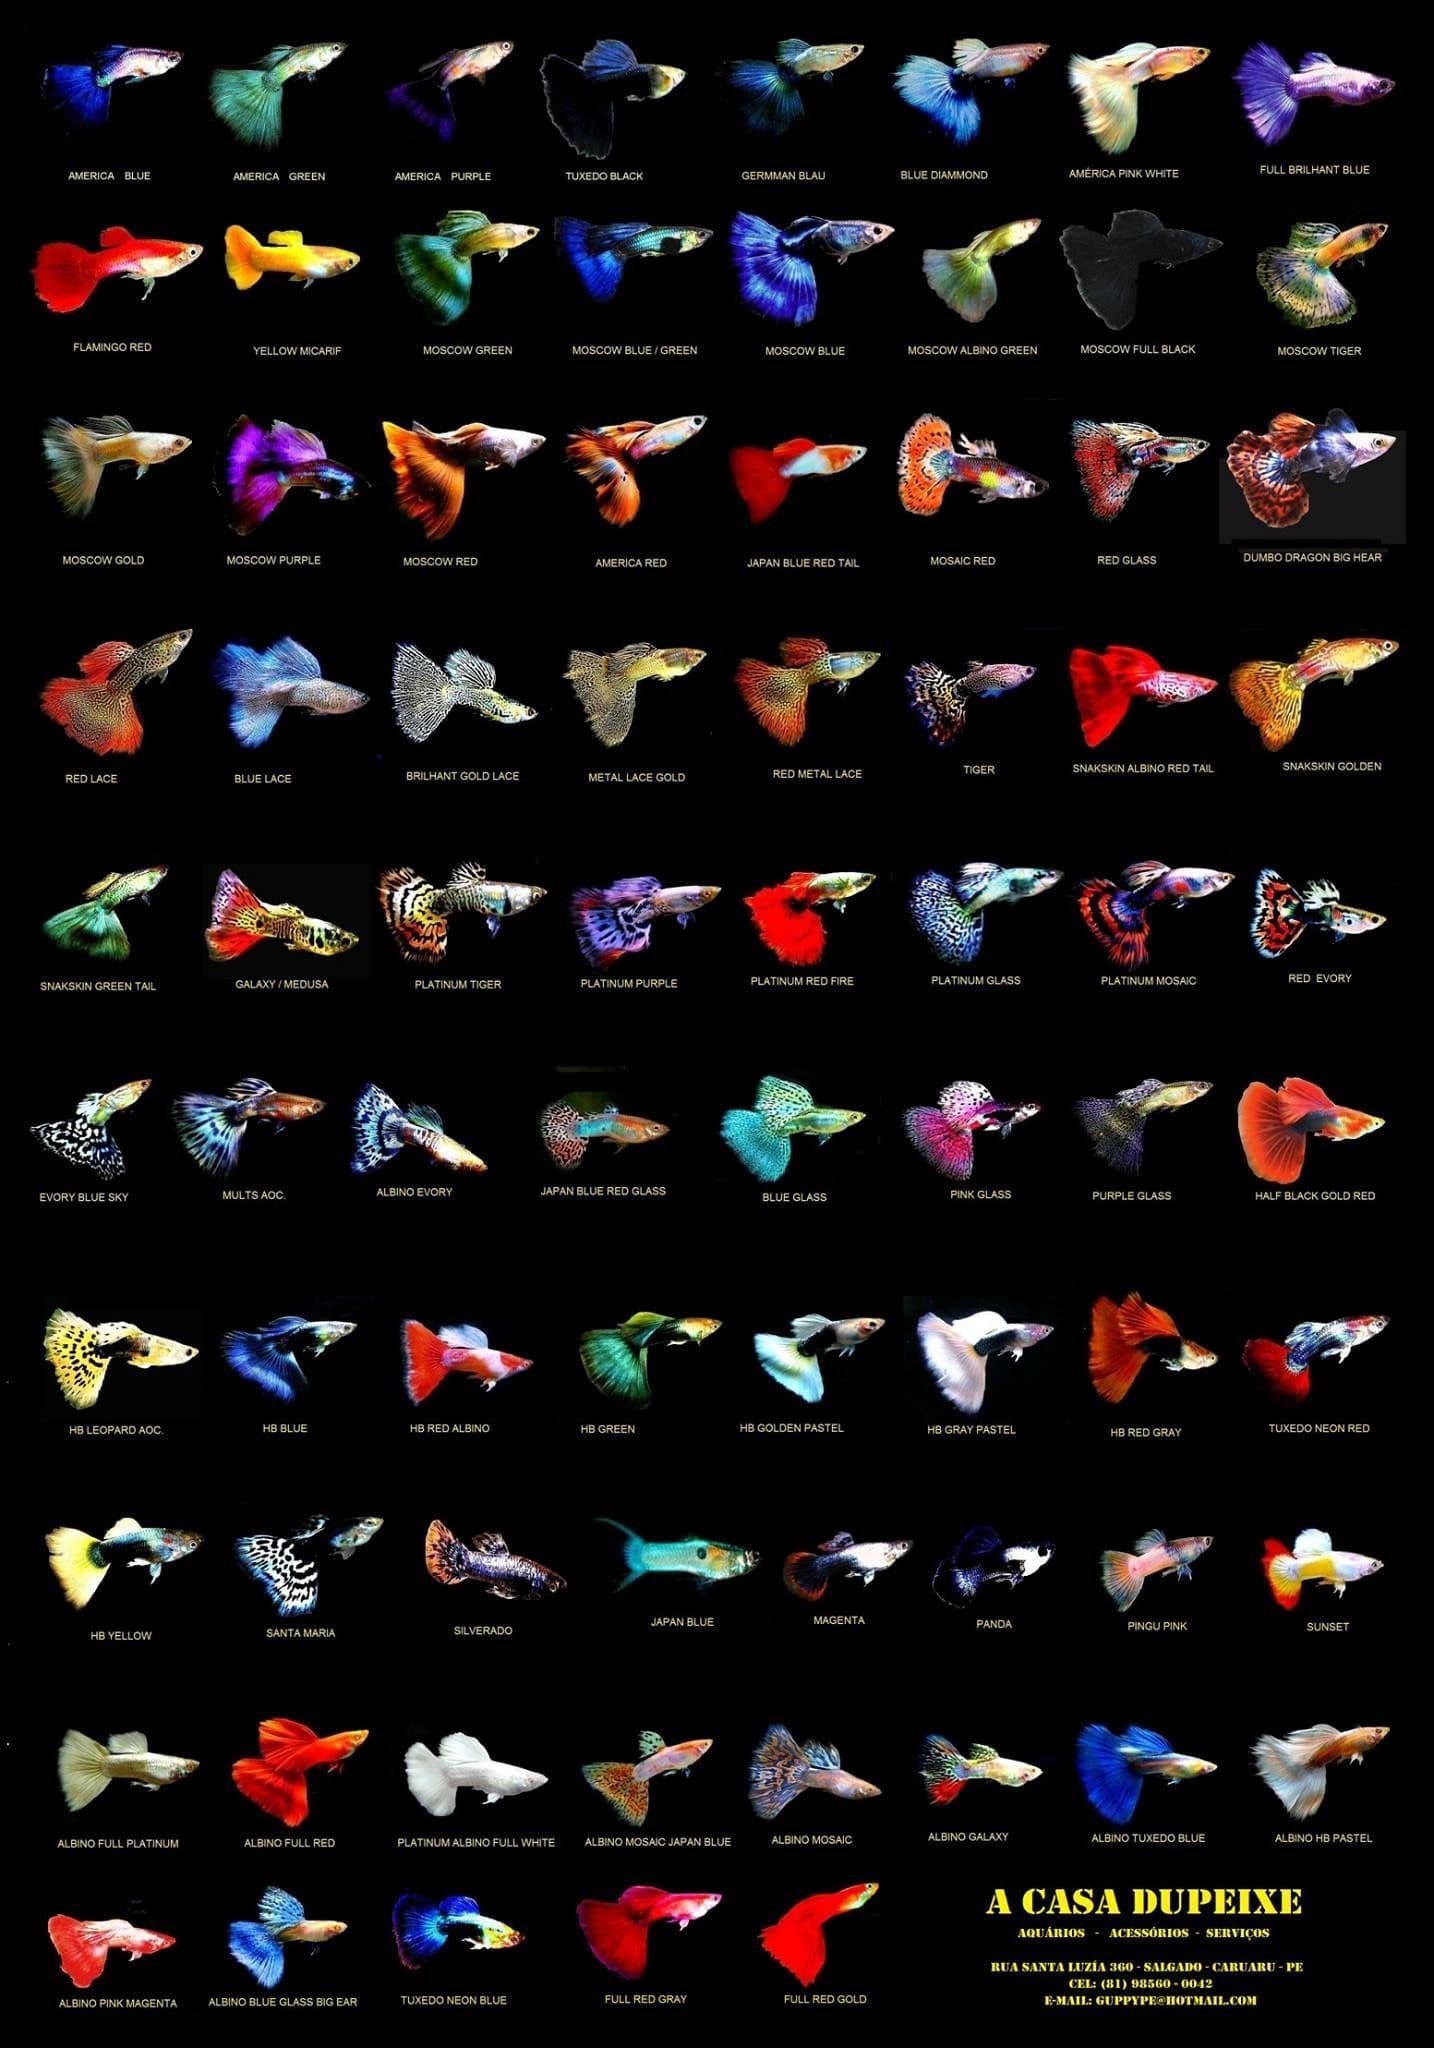 Hình ảnh cá bảy màu - Guppy